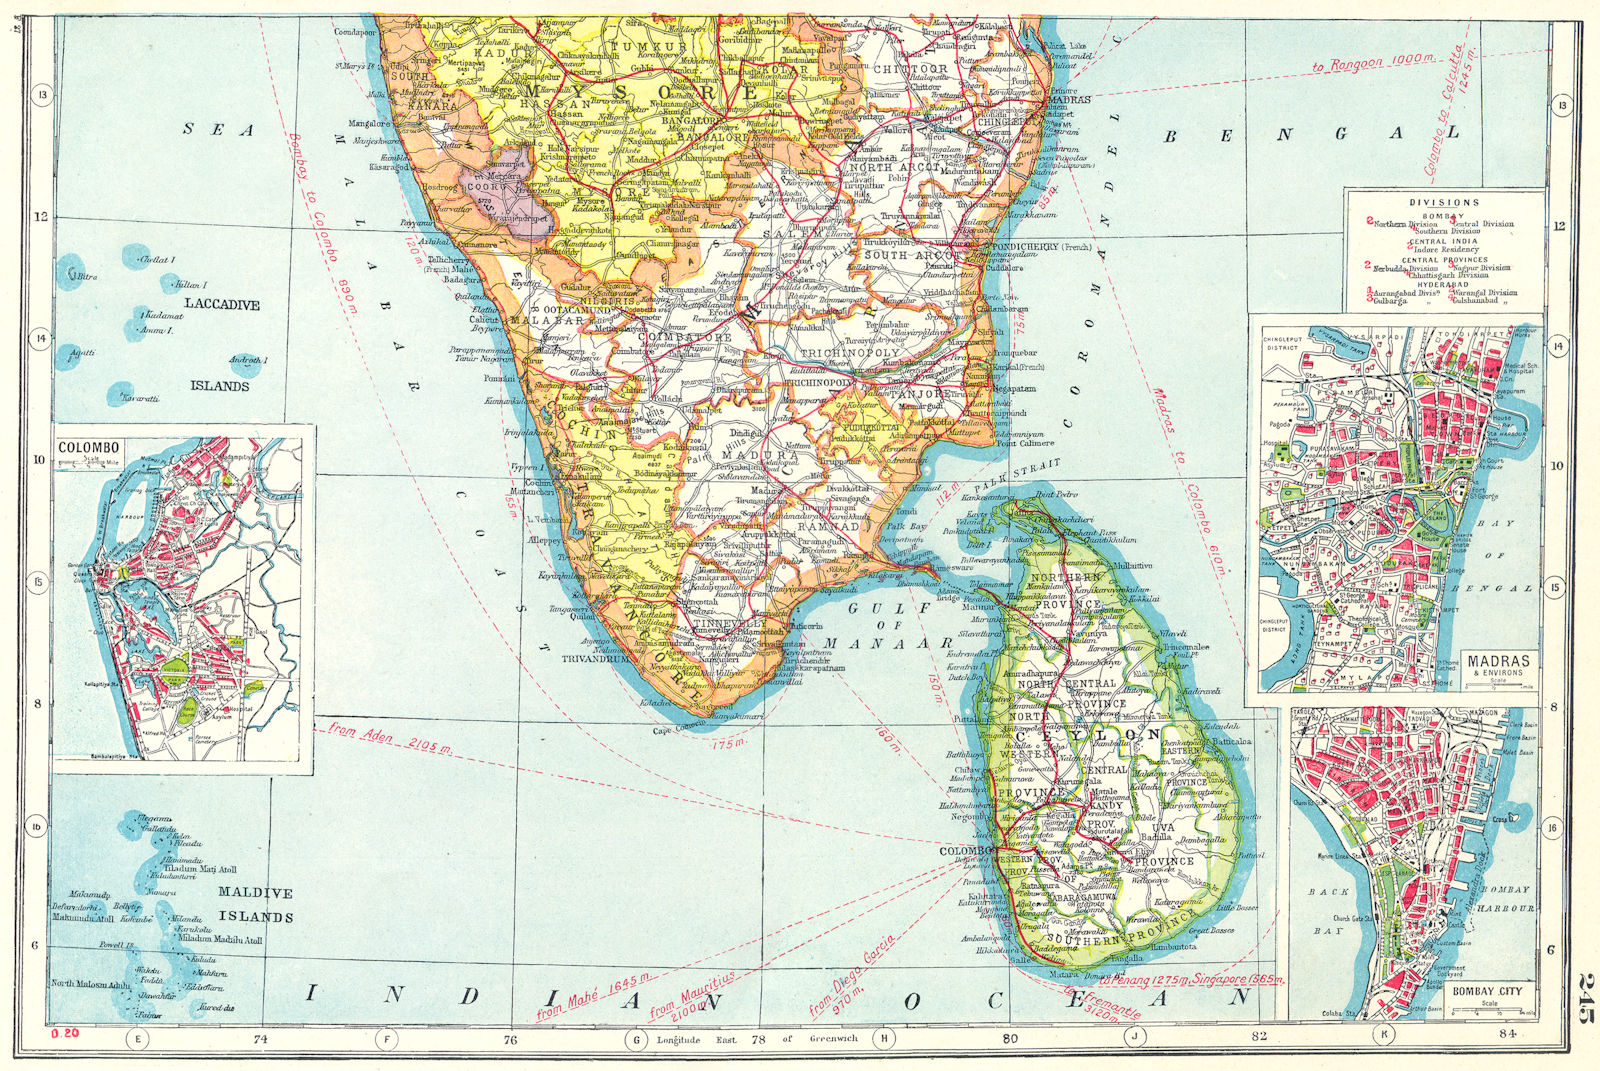 SOUTH INDIA/CEYLON. Chennai Madras Bombay Mumbai Colombo.Sri Lanka 1920 map